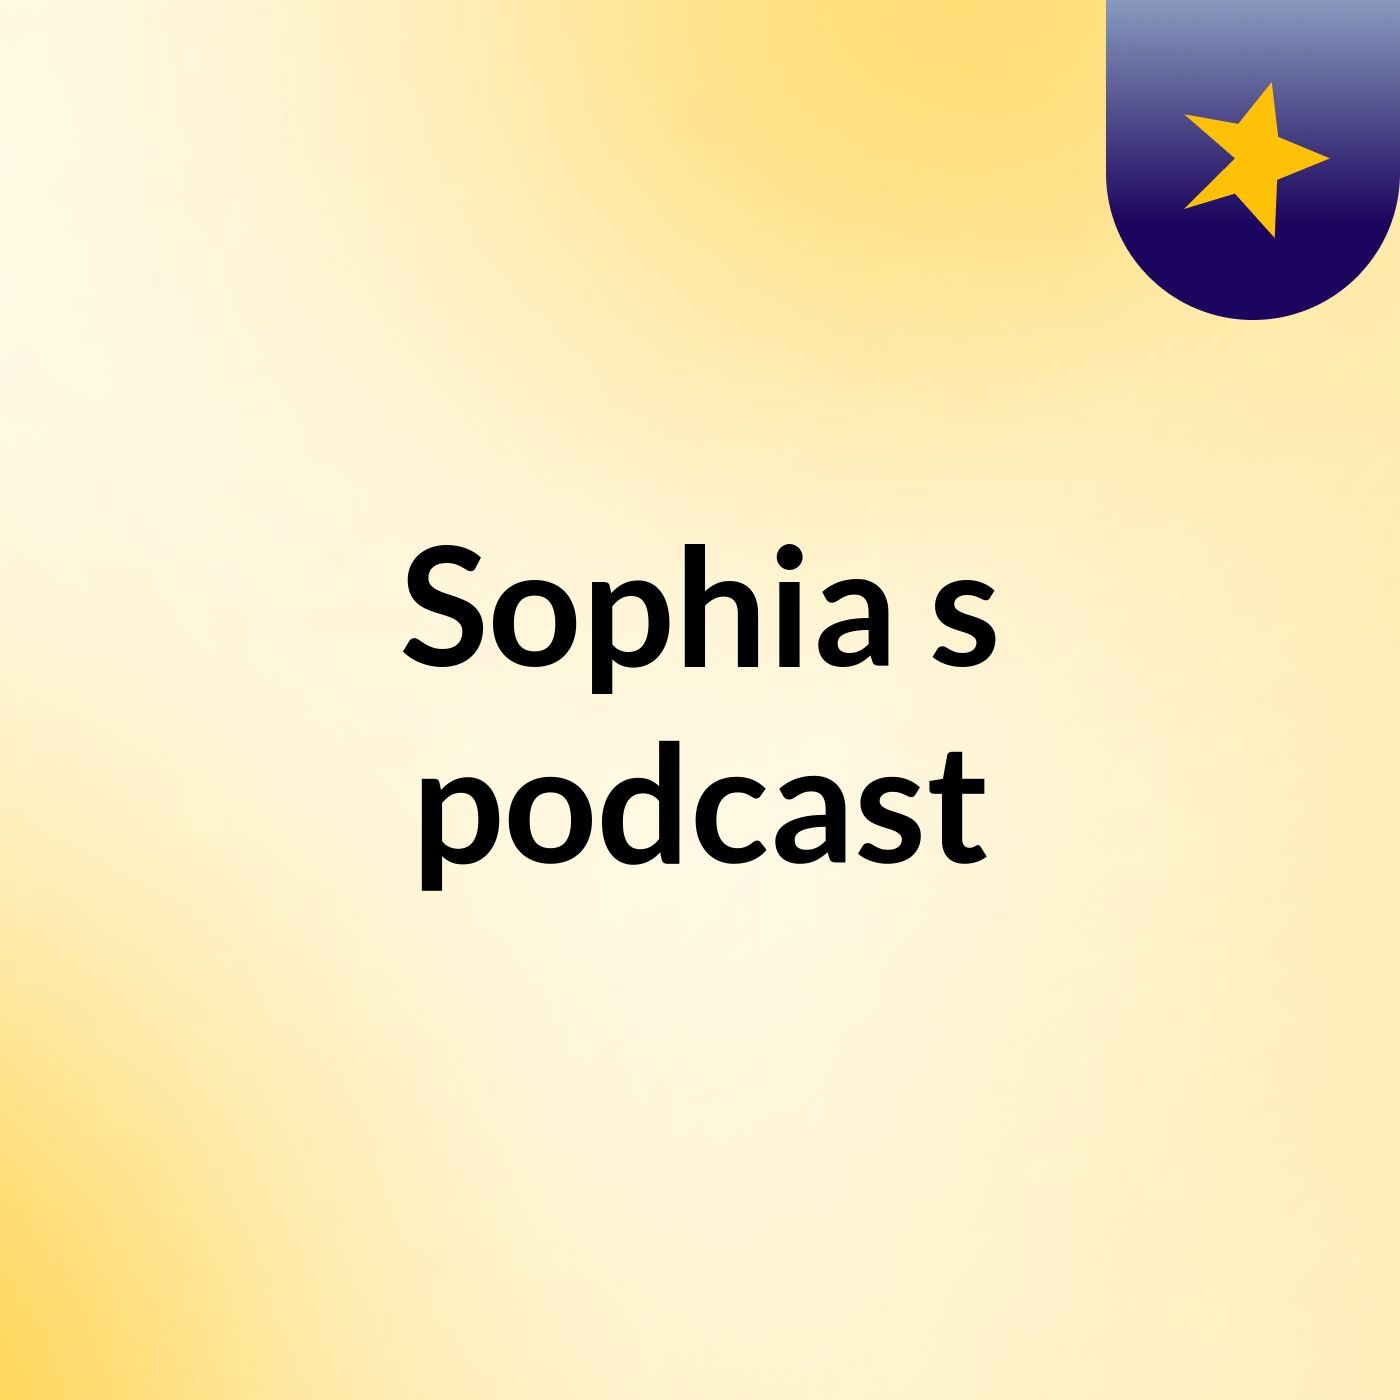 Episode 8 - Sophia's podcast